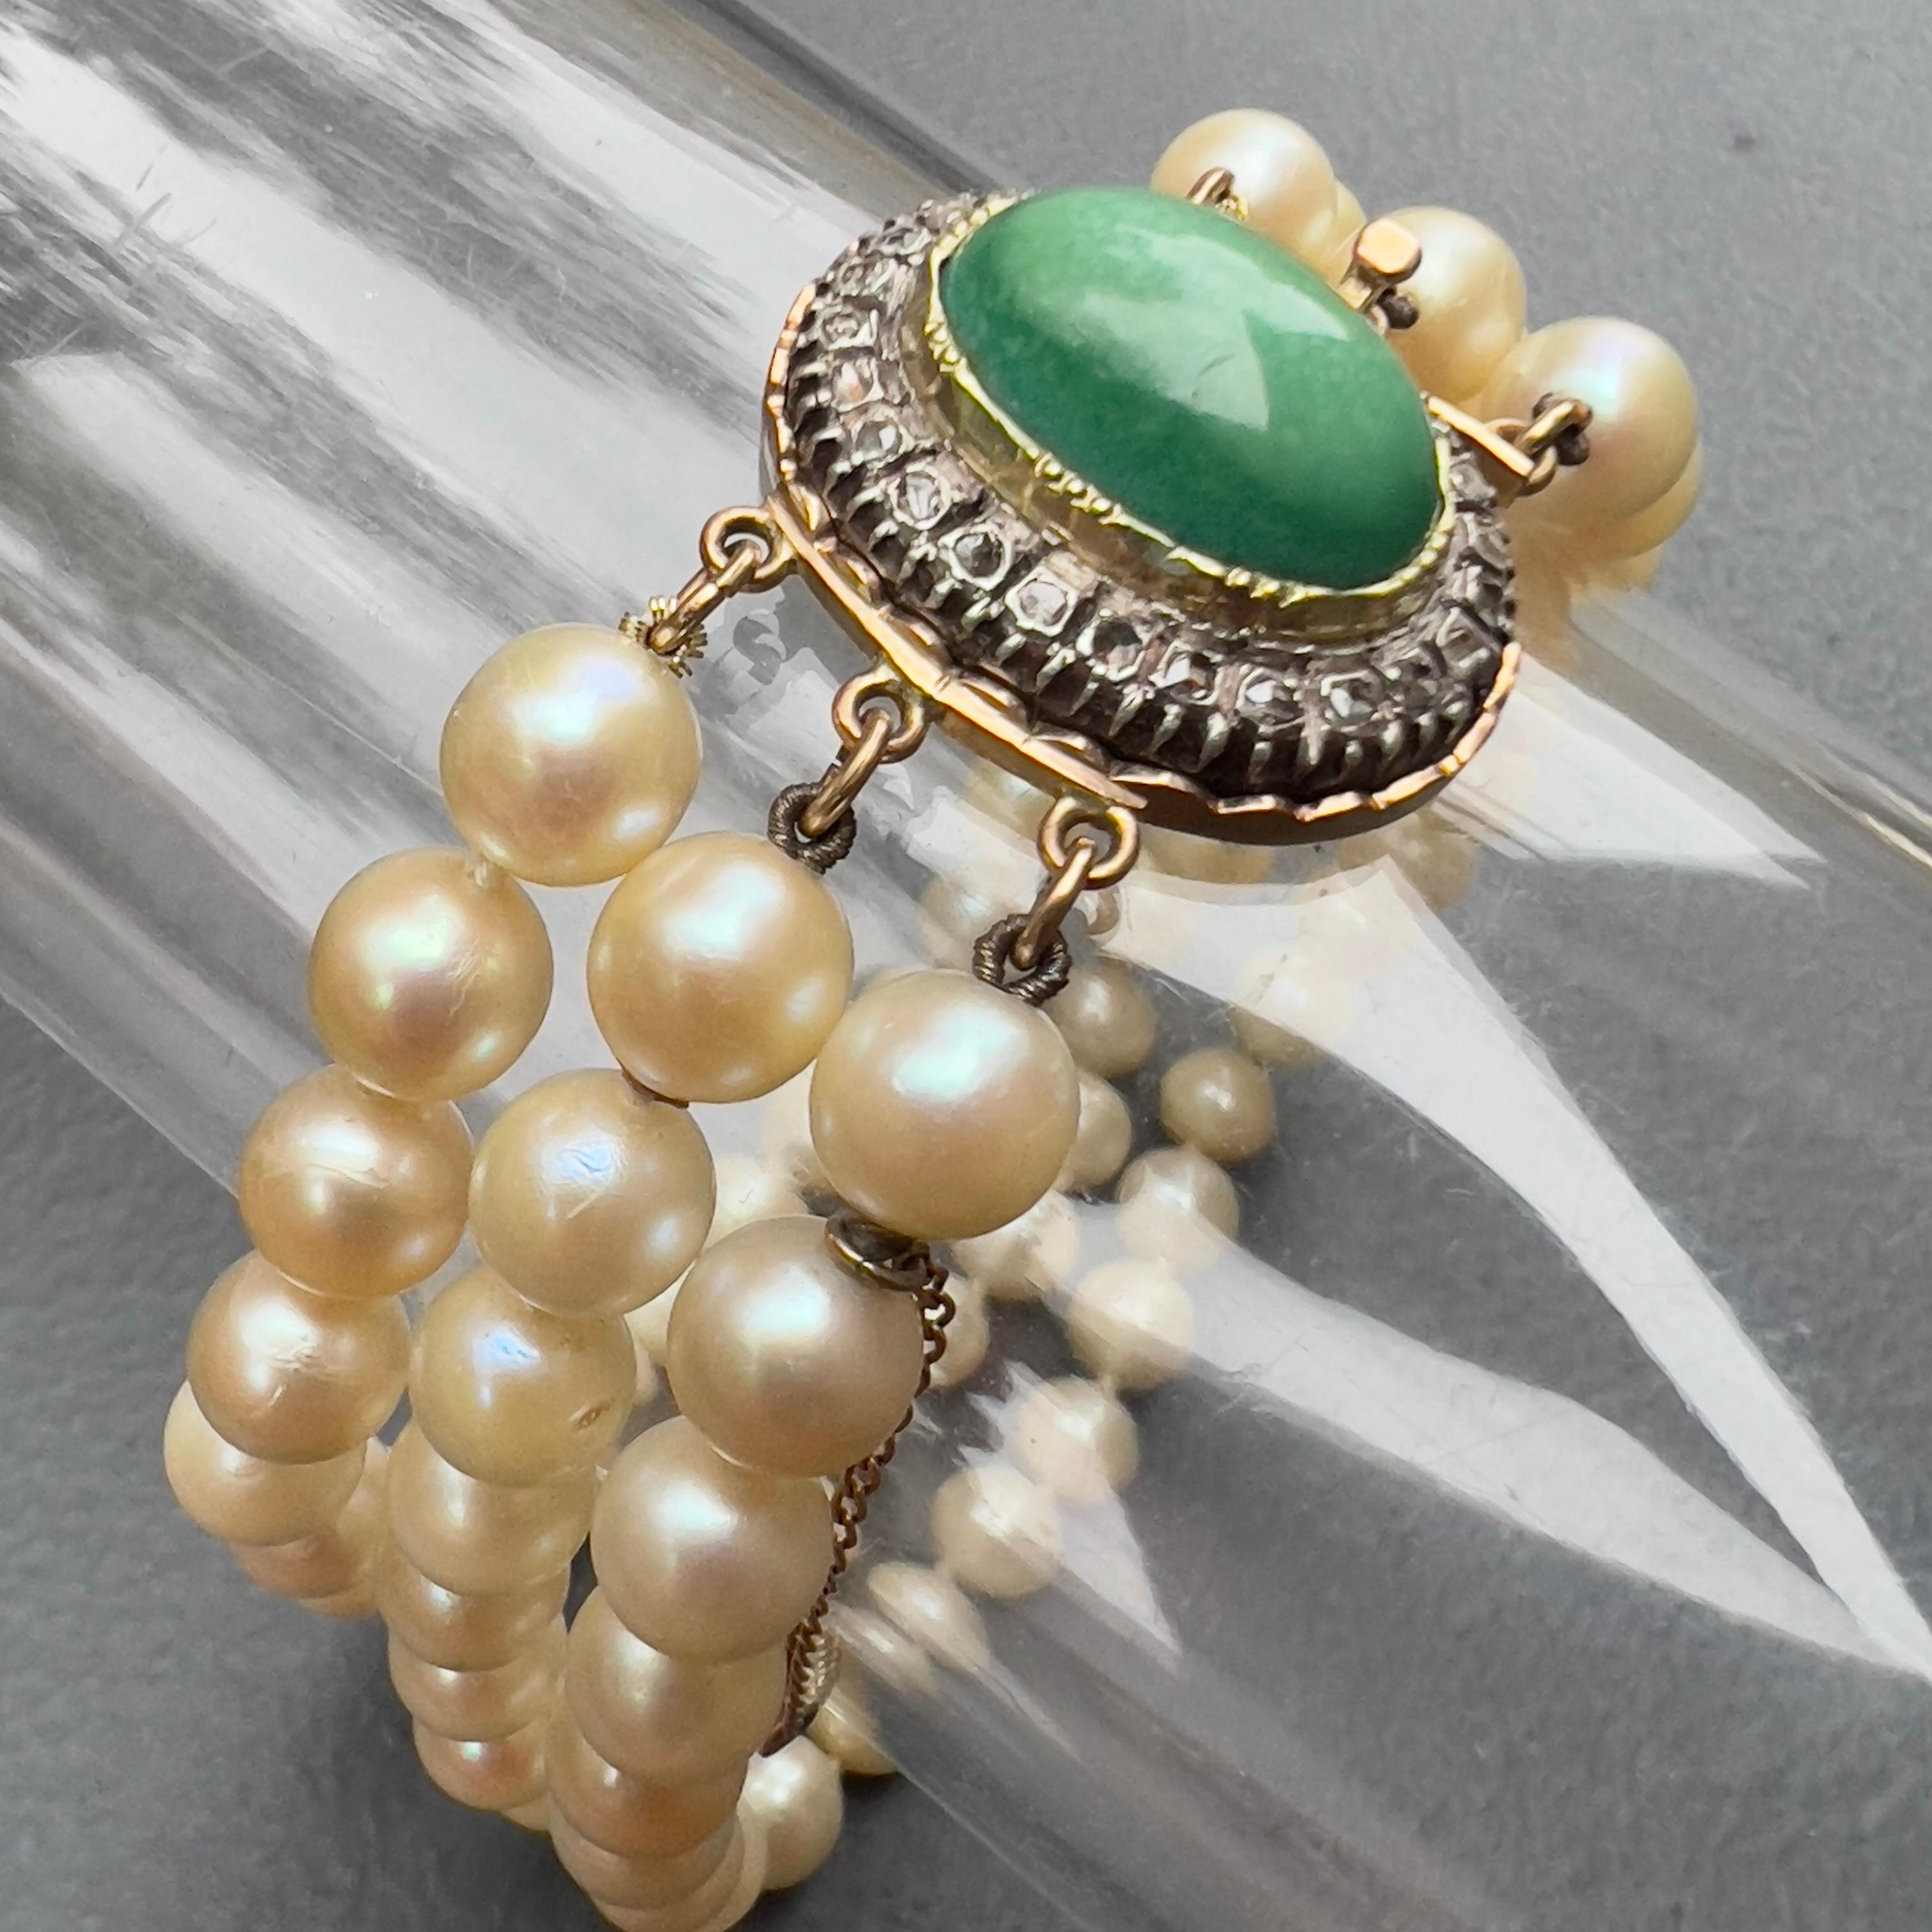 Antique Victorien  Bracelet en or 14kt, triple rang de perles nouées à la main . Le fermoir du bracelet est très orné et comporte un grand cabochon de turquoise entouré de petits diamants de taille rose surmontés d'argent. 
Dates : Fin du 19ème au